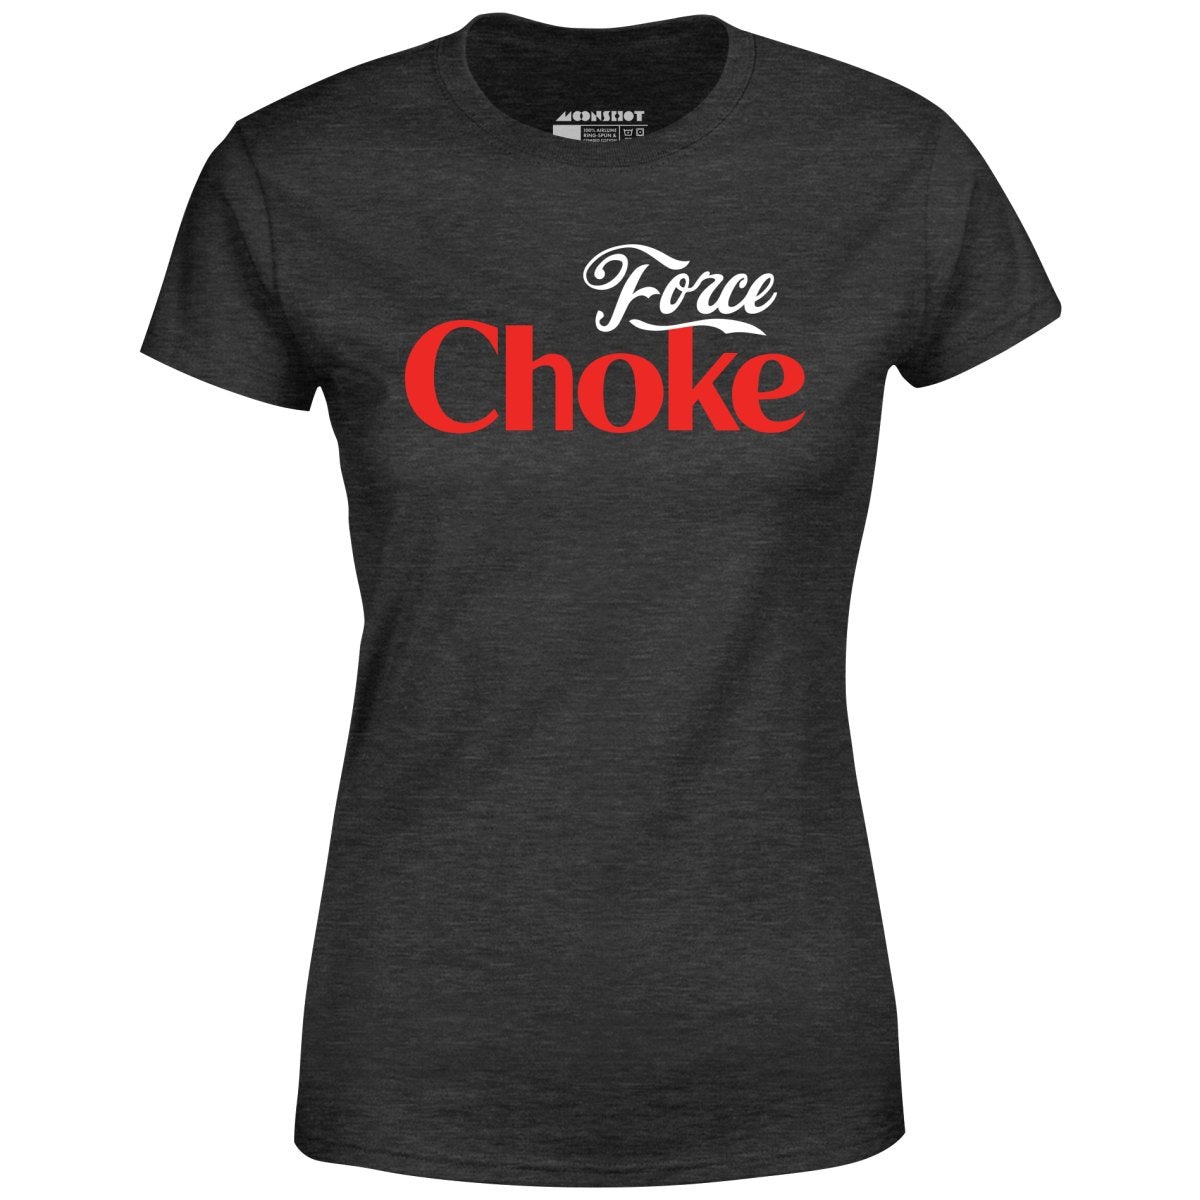 Force Choke - Women's T-Shirt